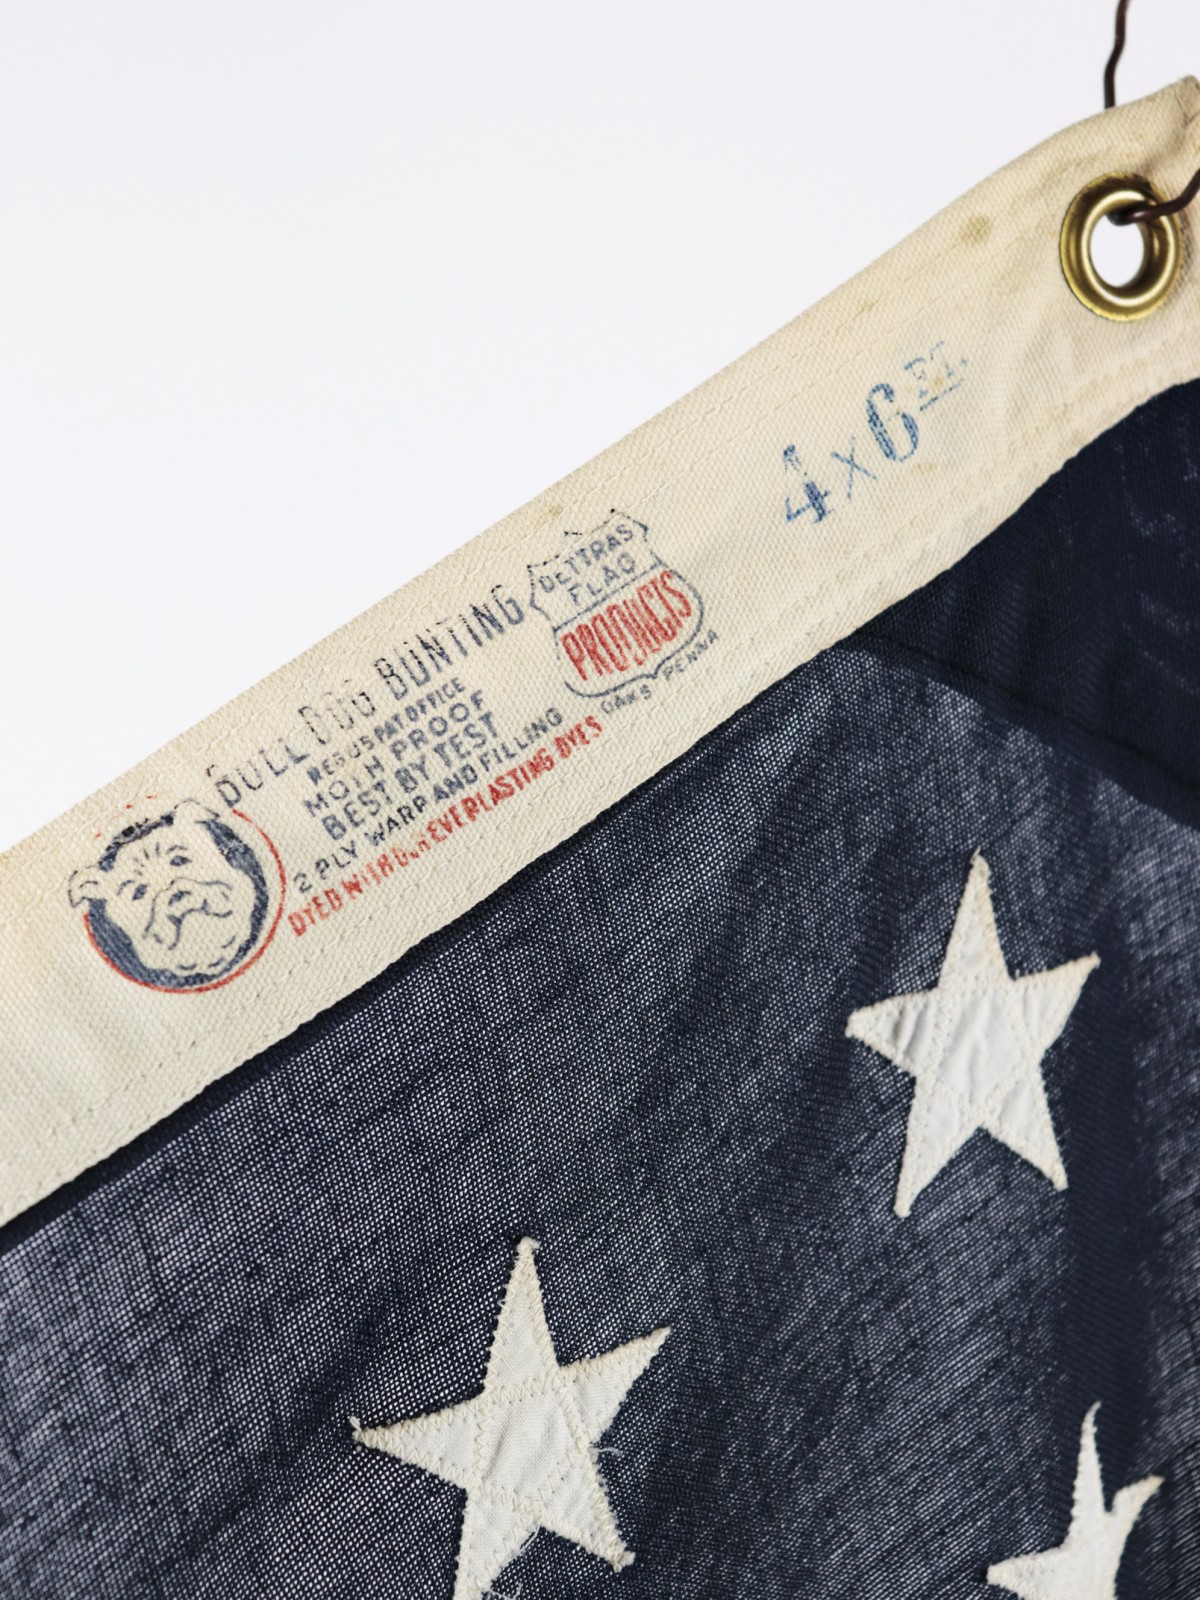 48star, Flag, USA